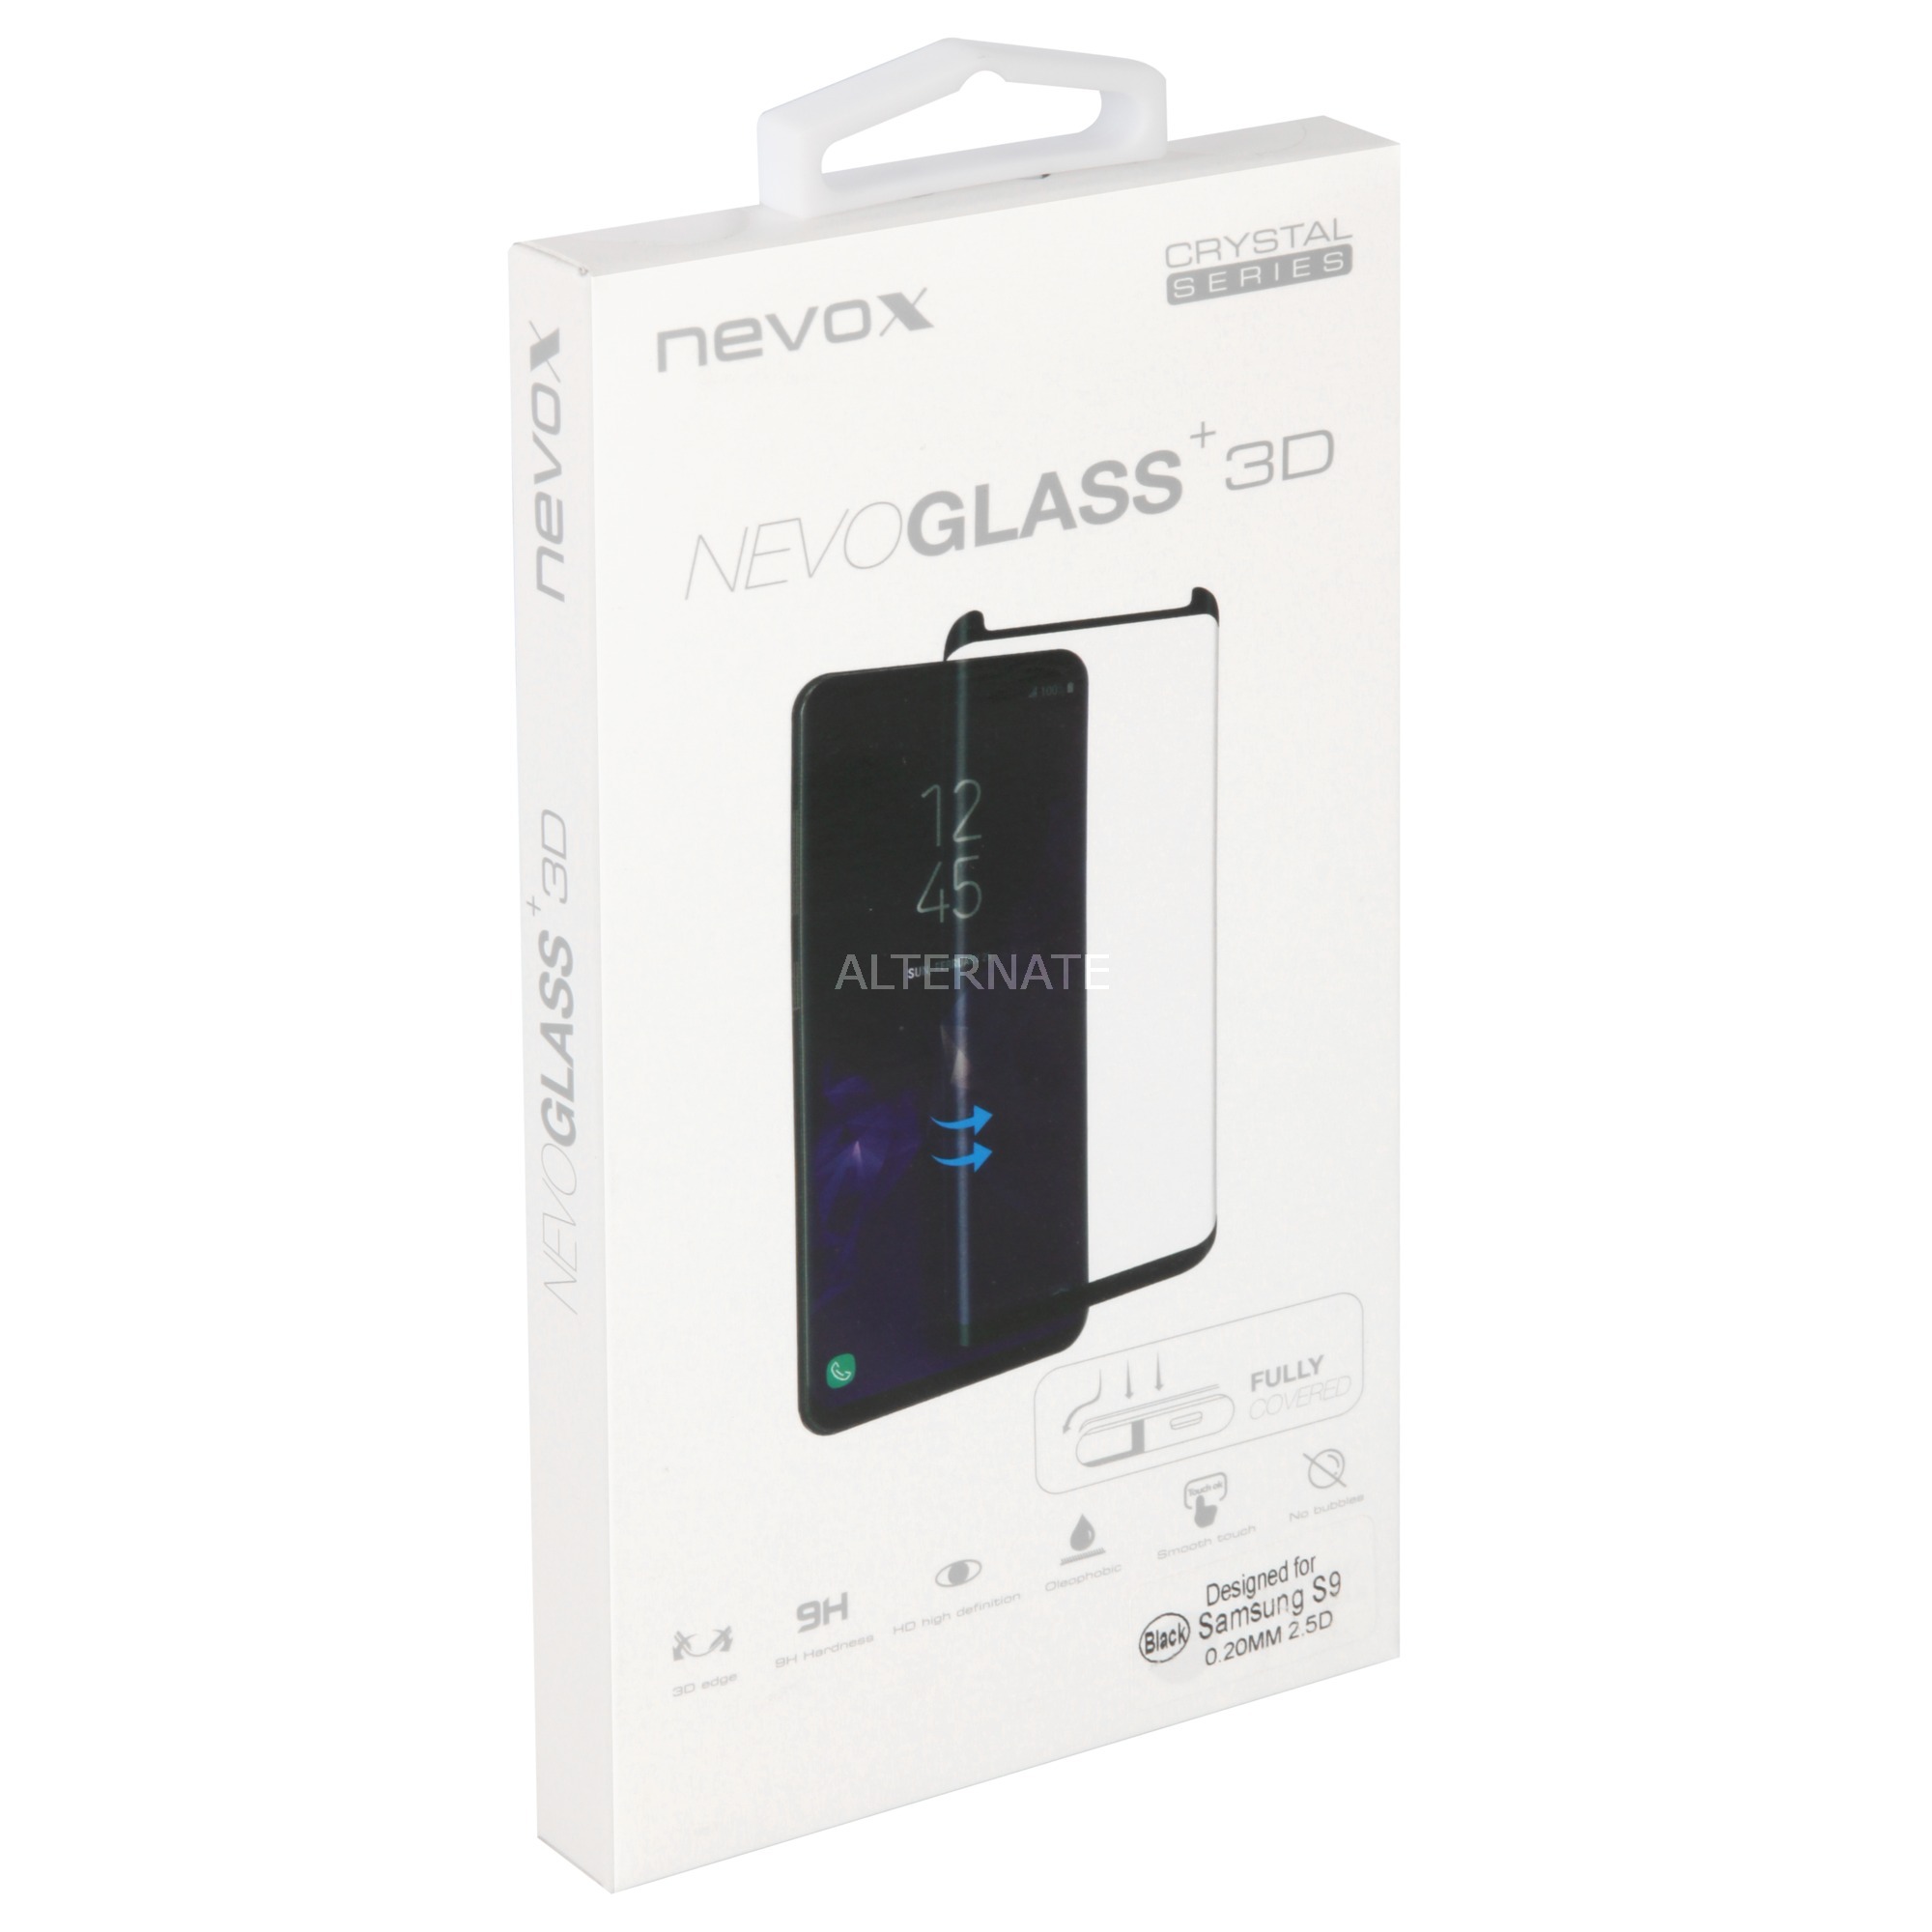 NEVOGLASS 3D Przezroczysta ochrona ekranu Galaxy S9 1 szt., Folia ochronna